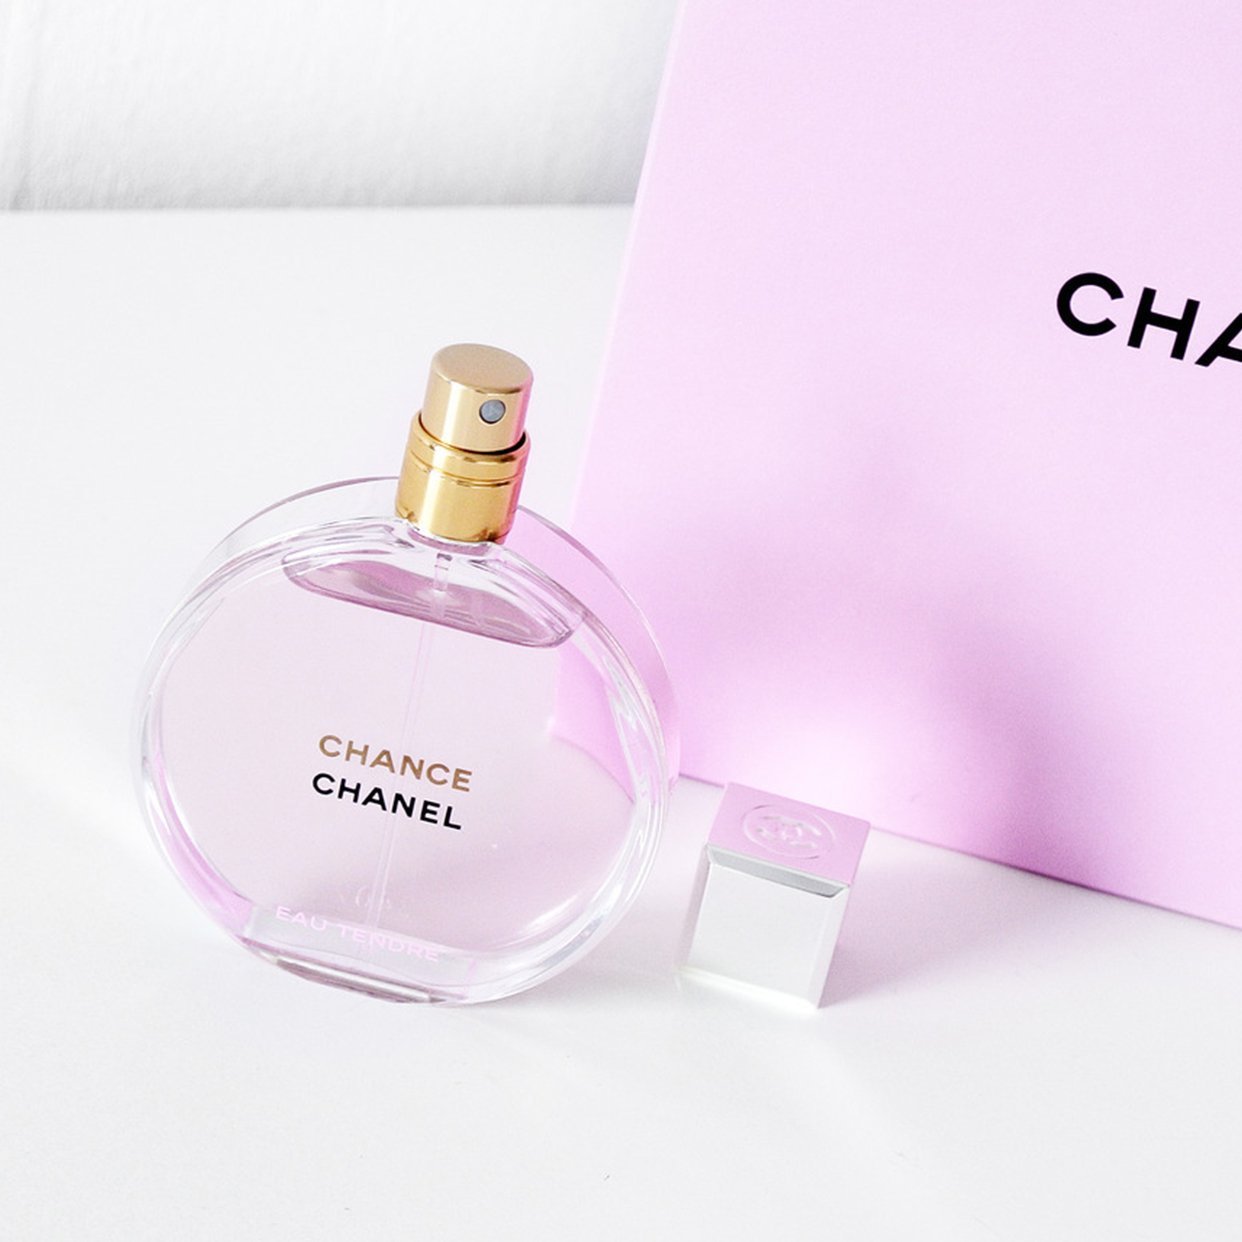 Chanel Chance Eau Tendre EDP - My Perfume Shop Australia